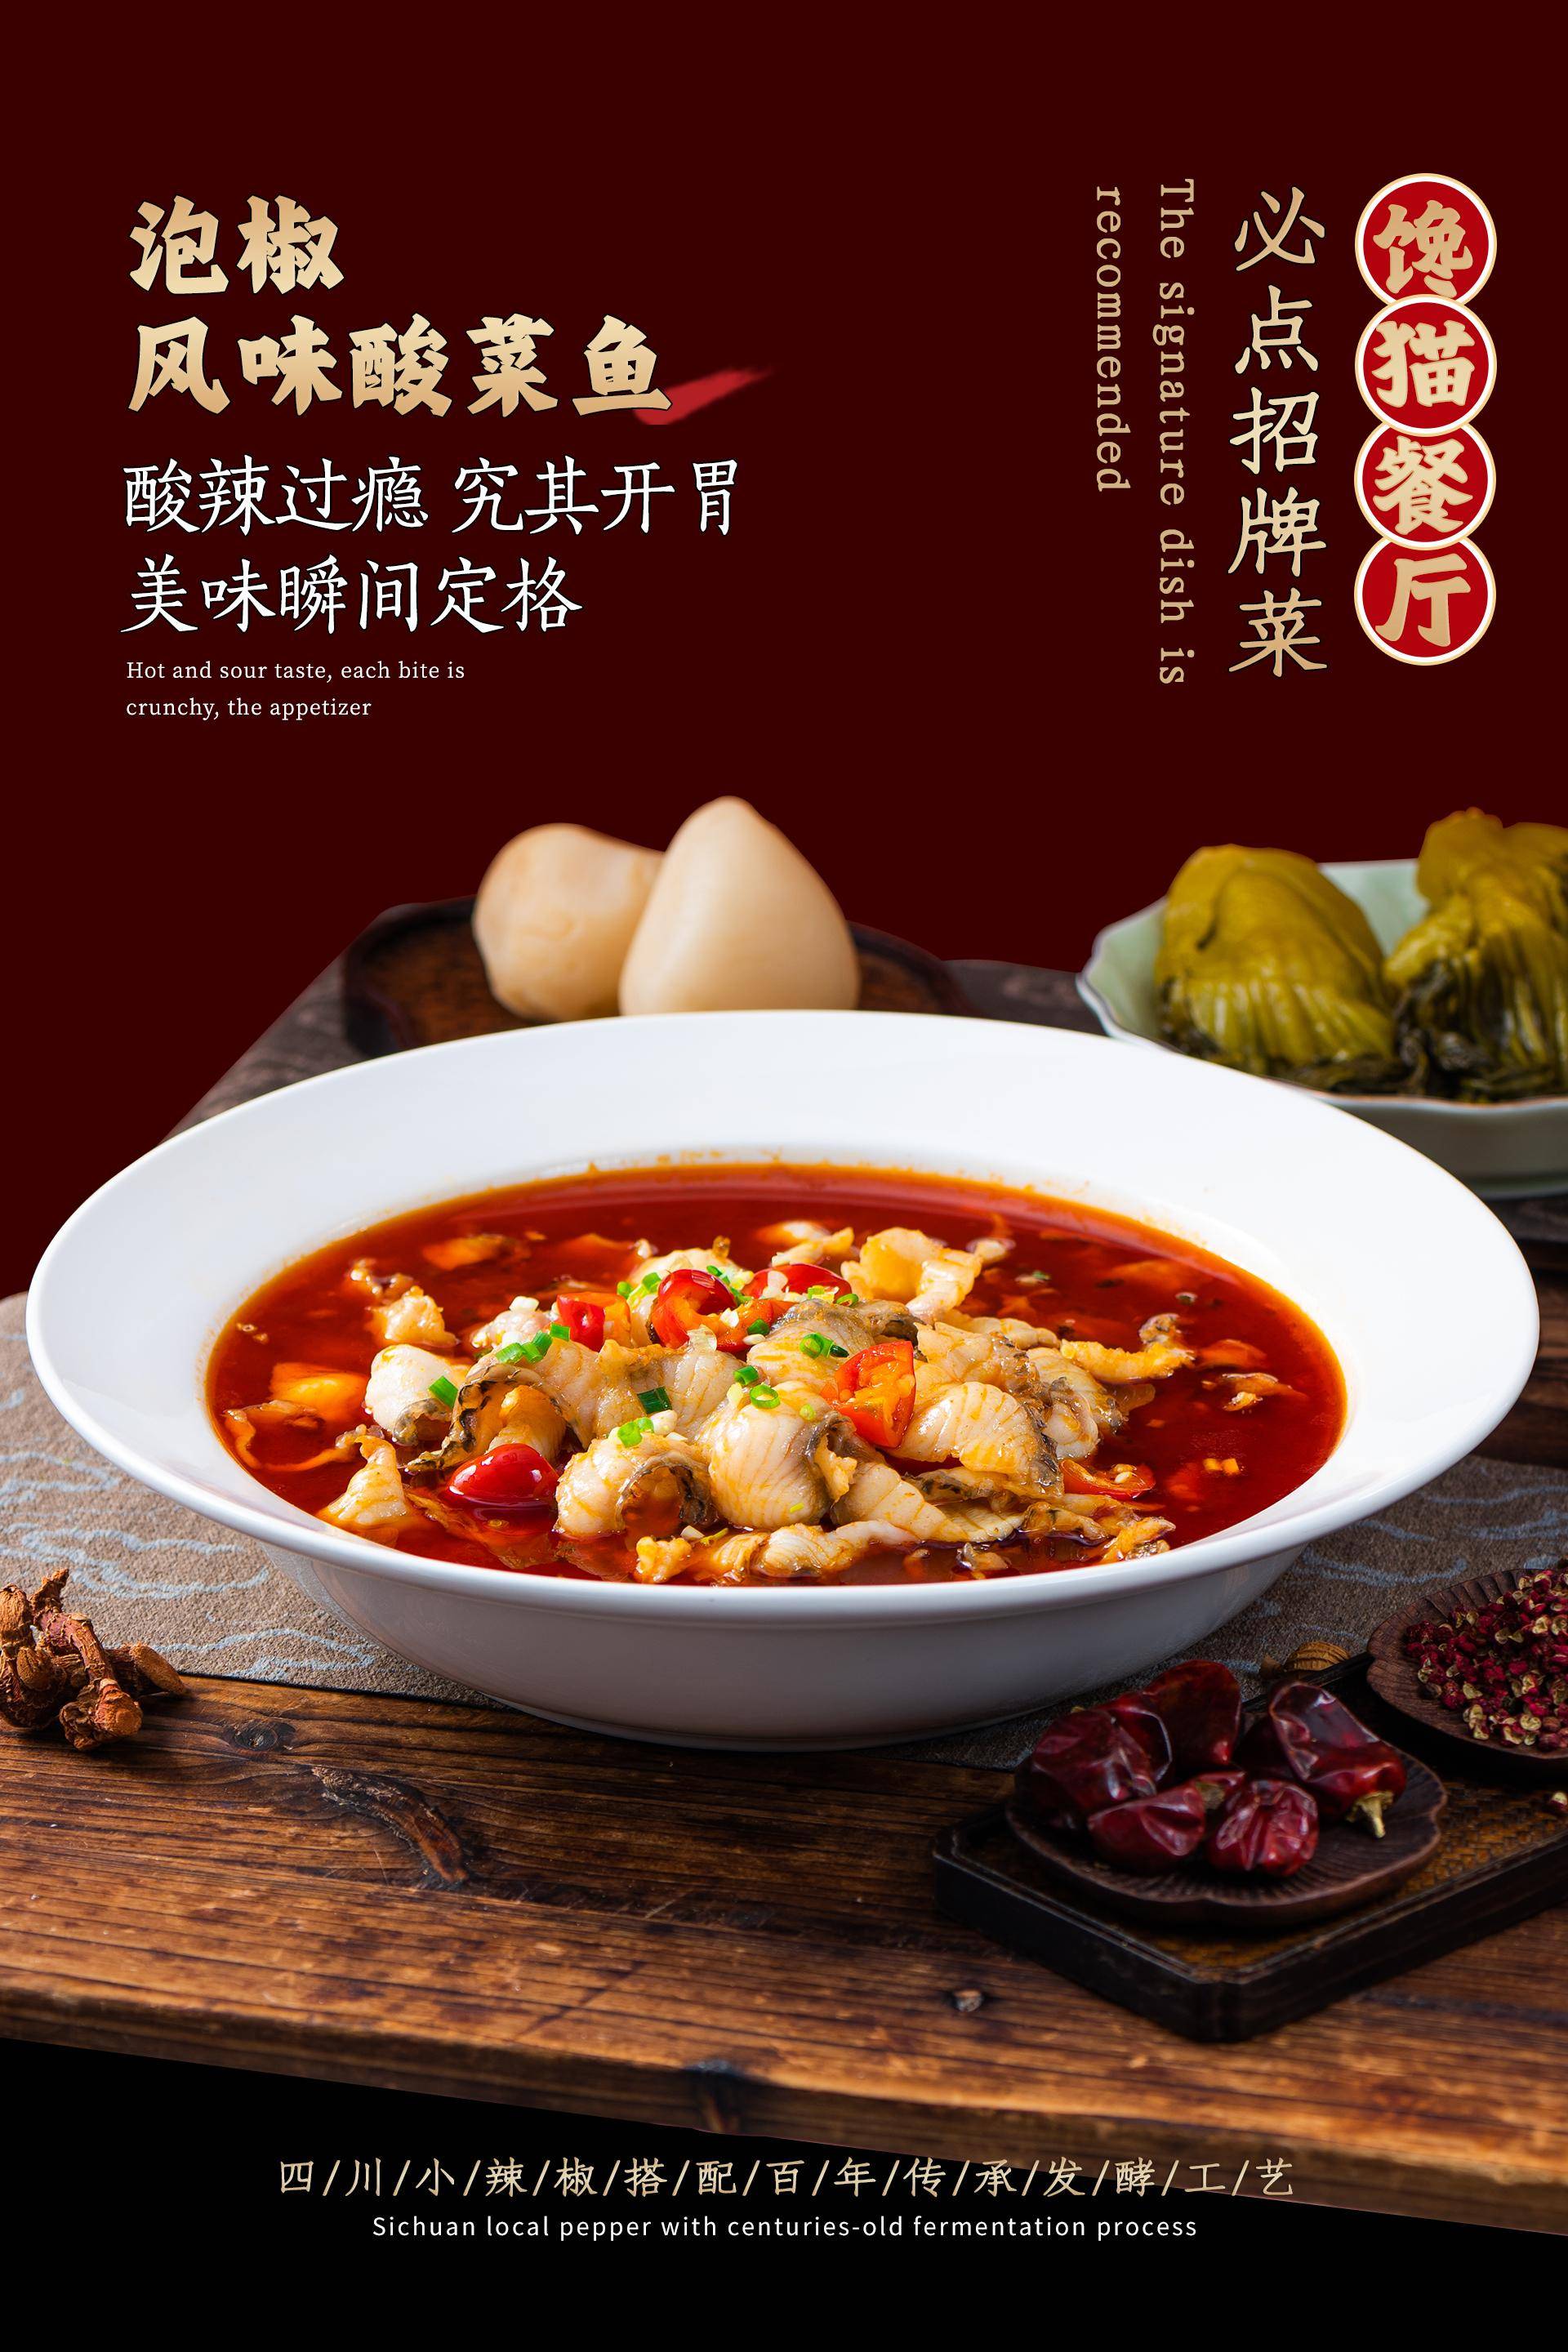 中国烹饪大师,酸菜鱼大王何勇:坚守传统老川菜的烹饪工艺,做强酸菜鱼